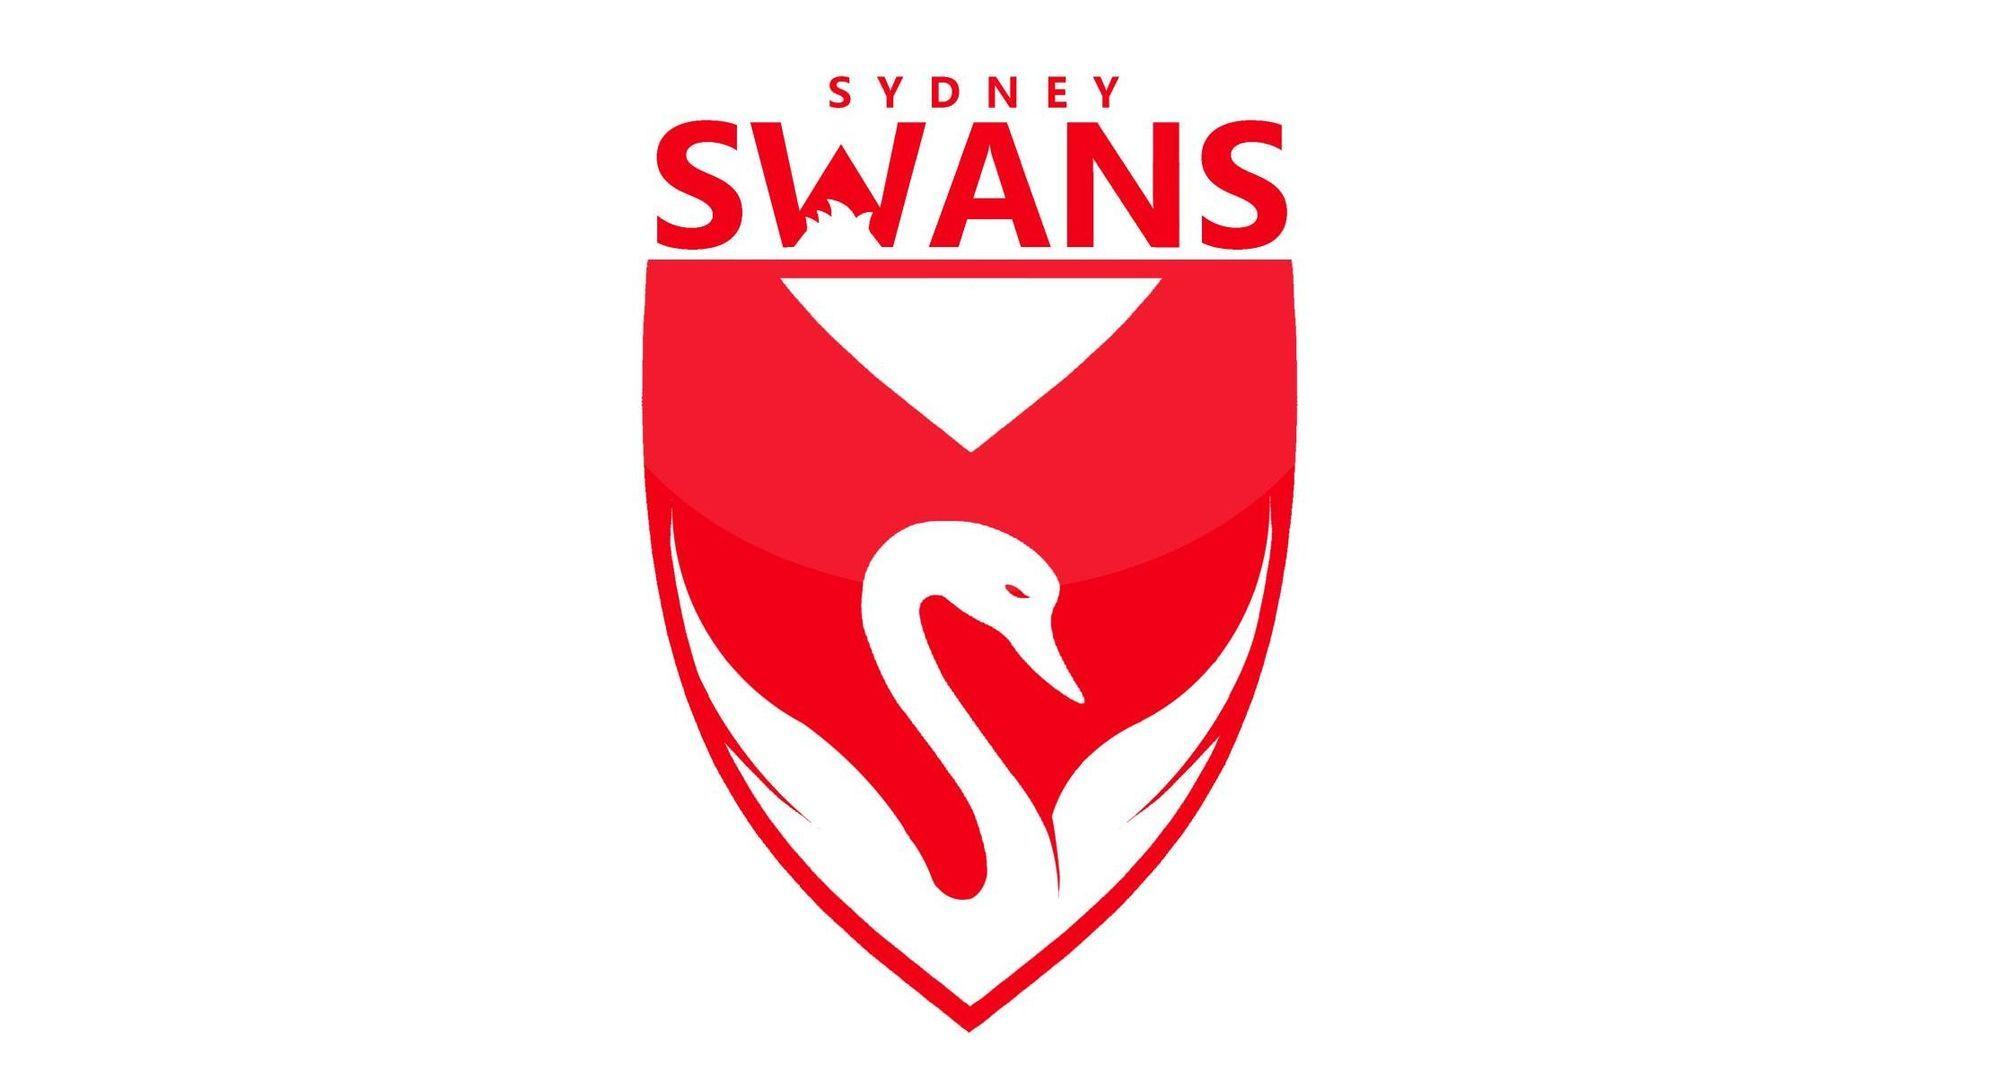 Swans Logo - Sydney Swans Football Club